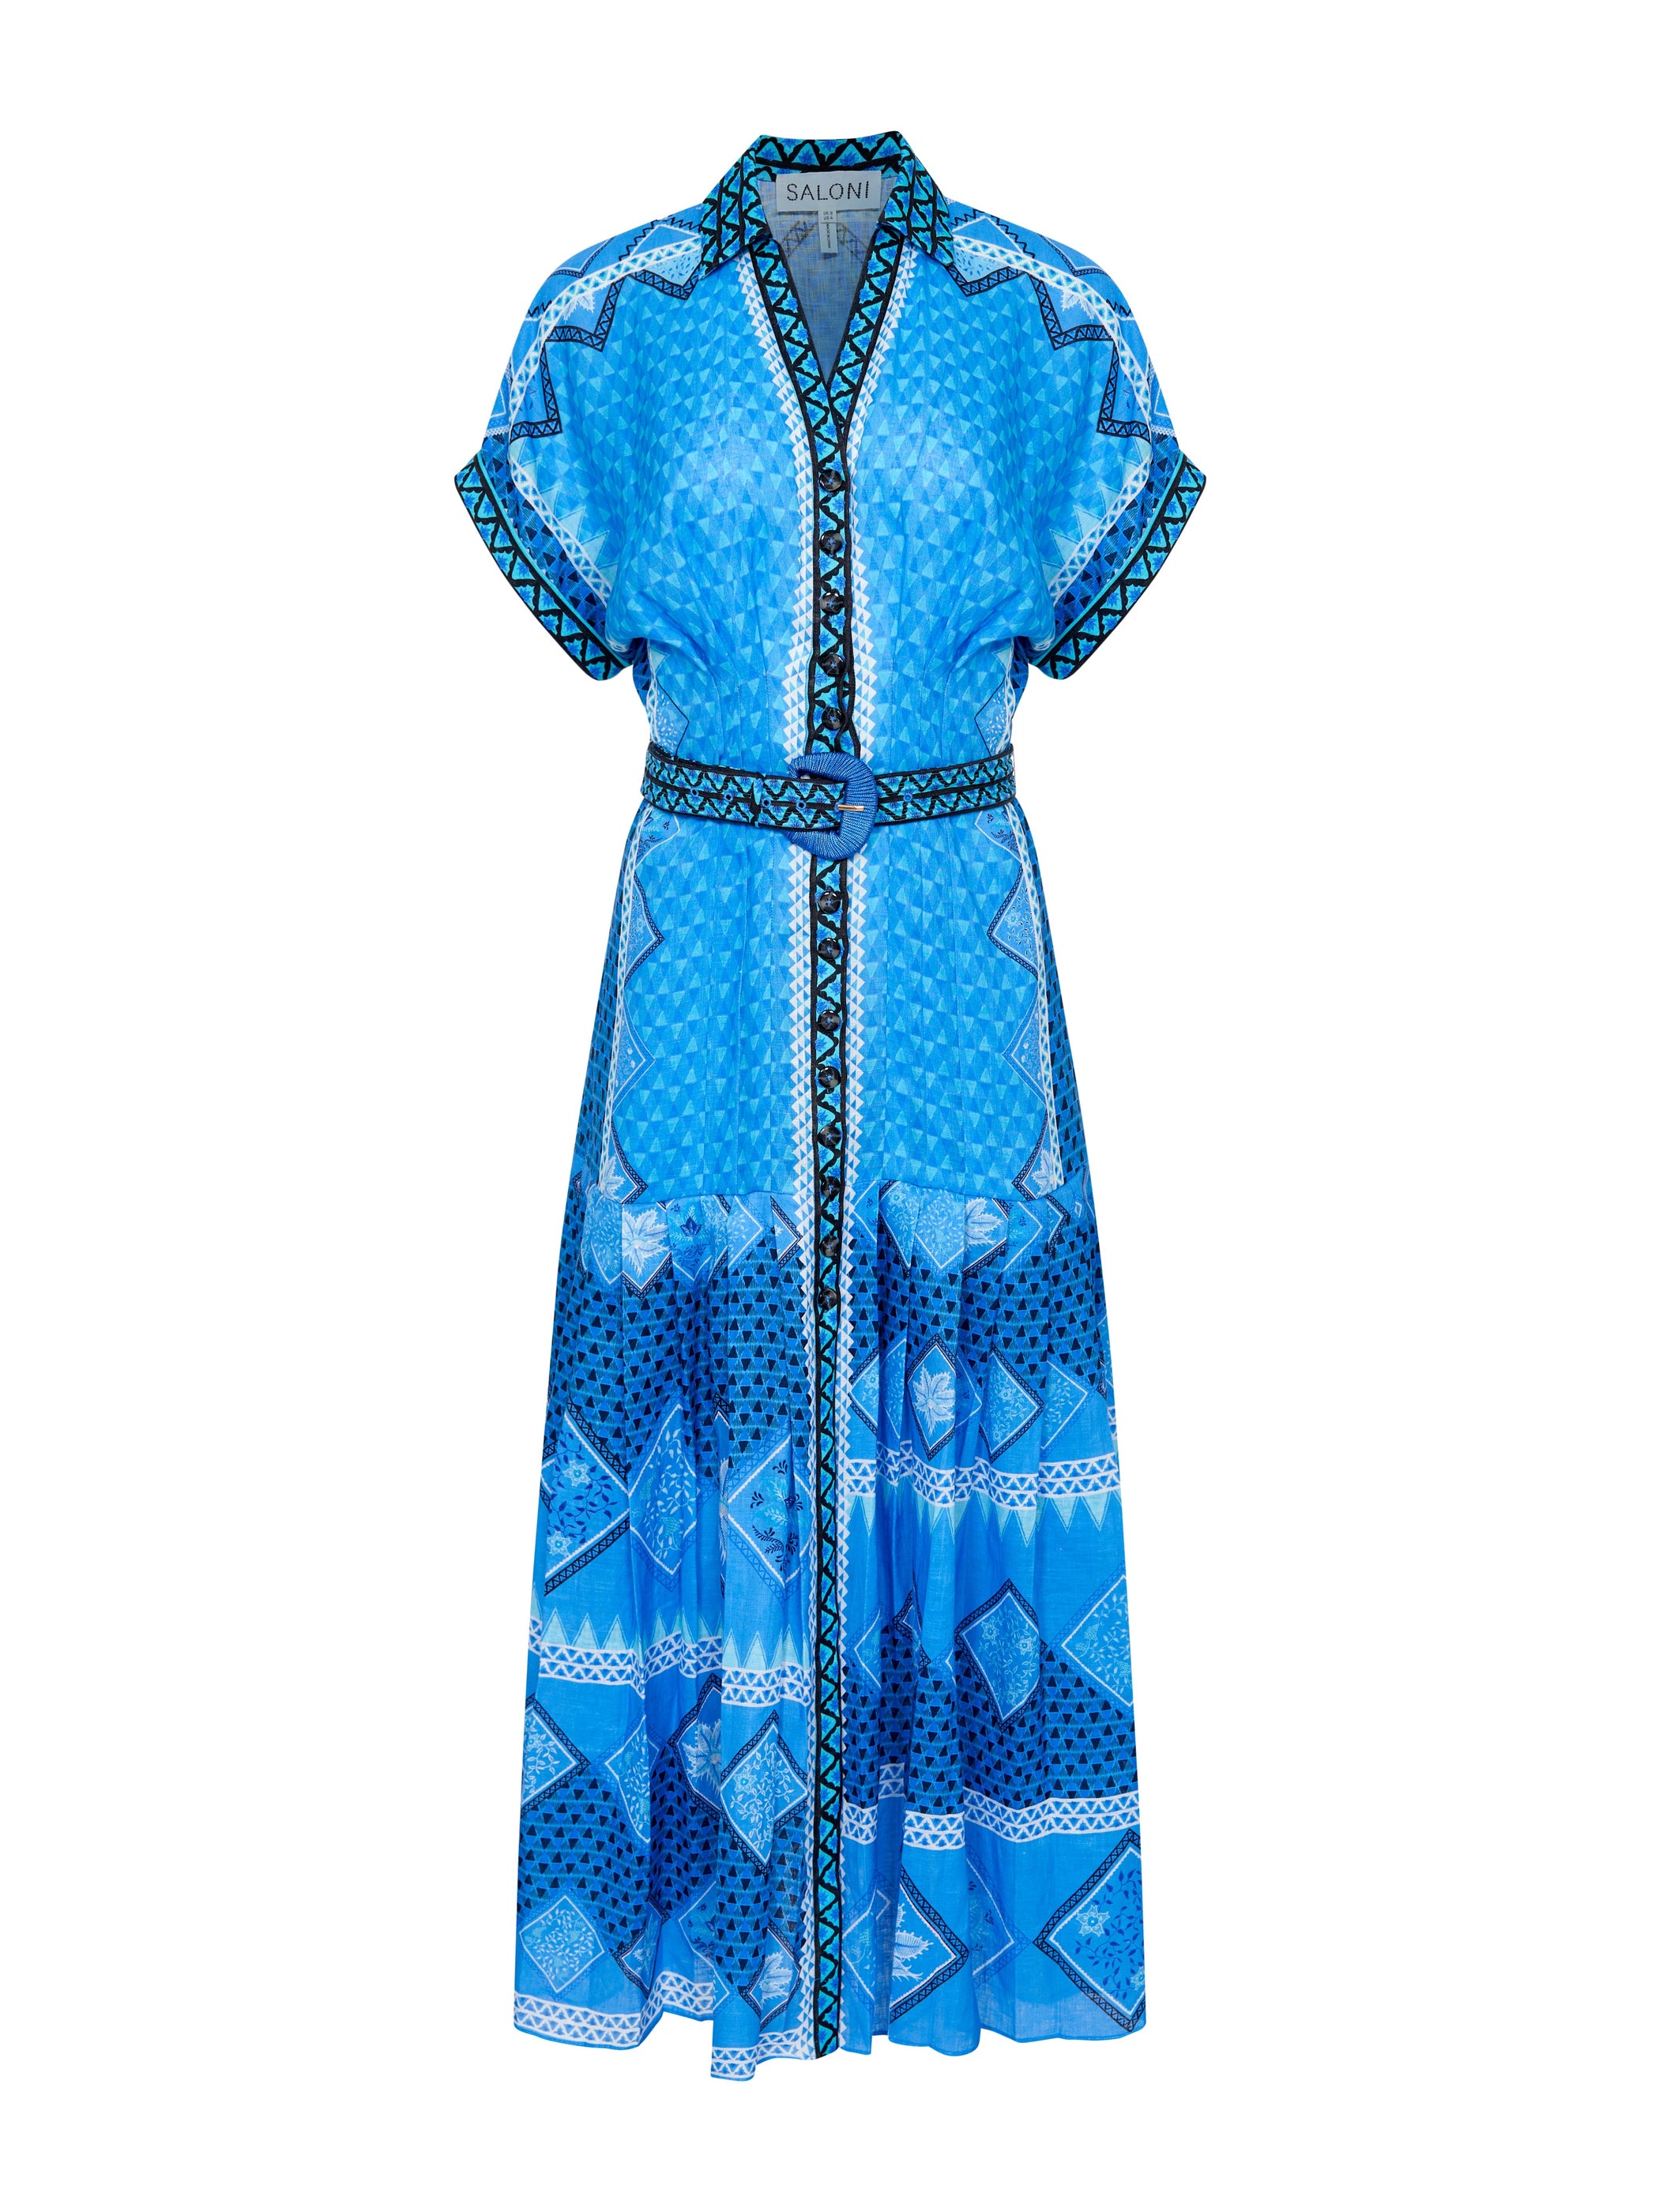 Riya B Dress in Peri Verdant